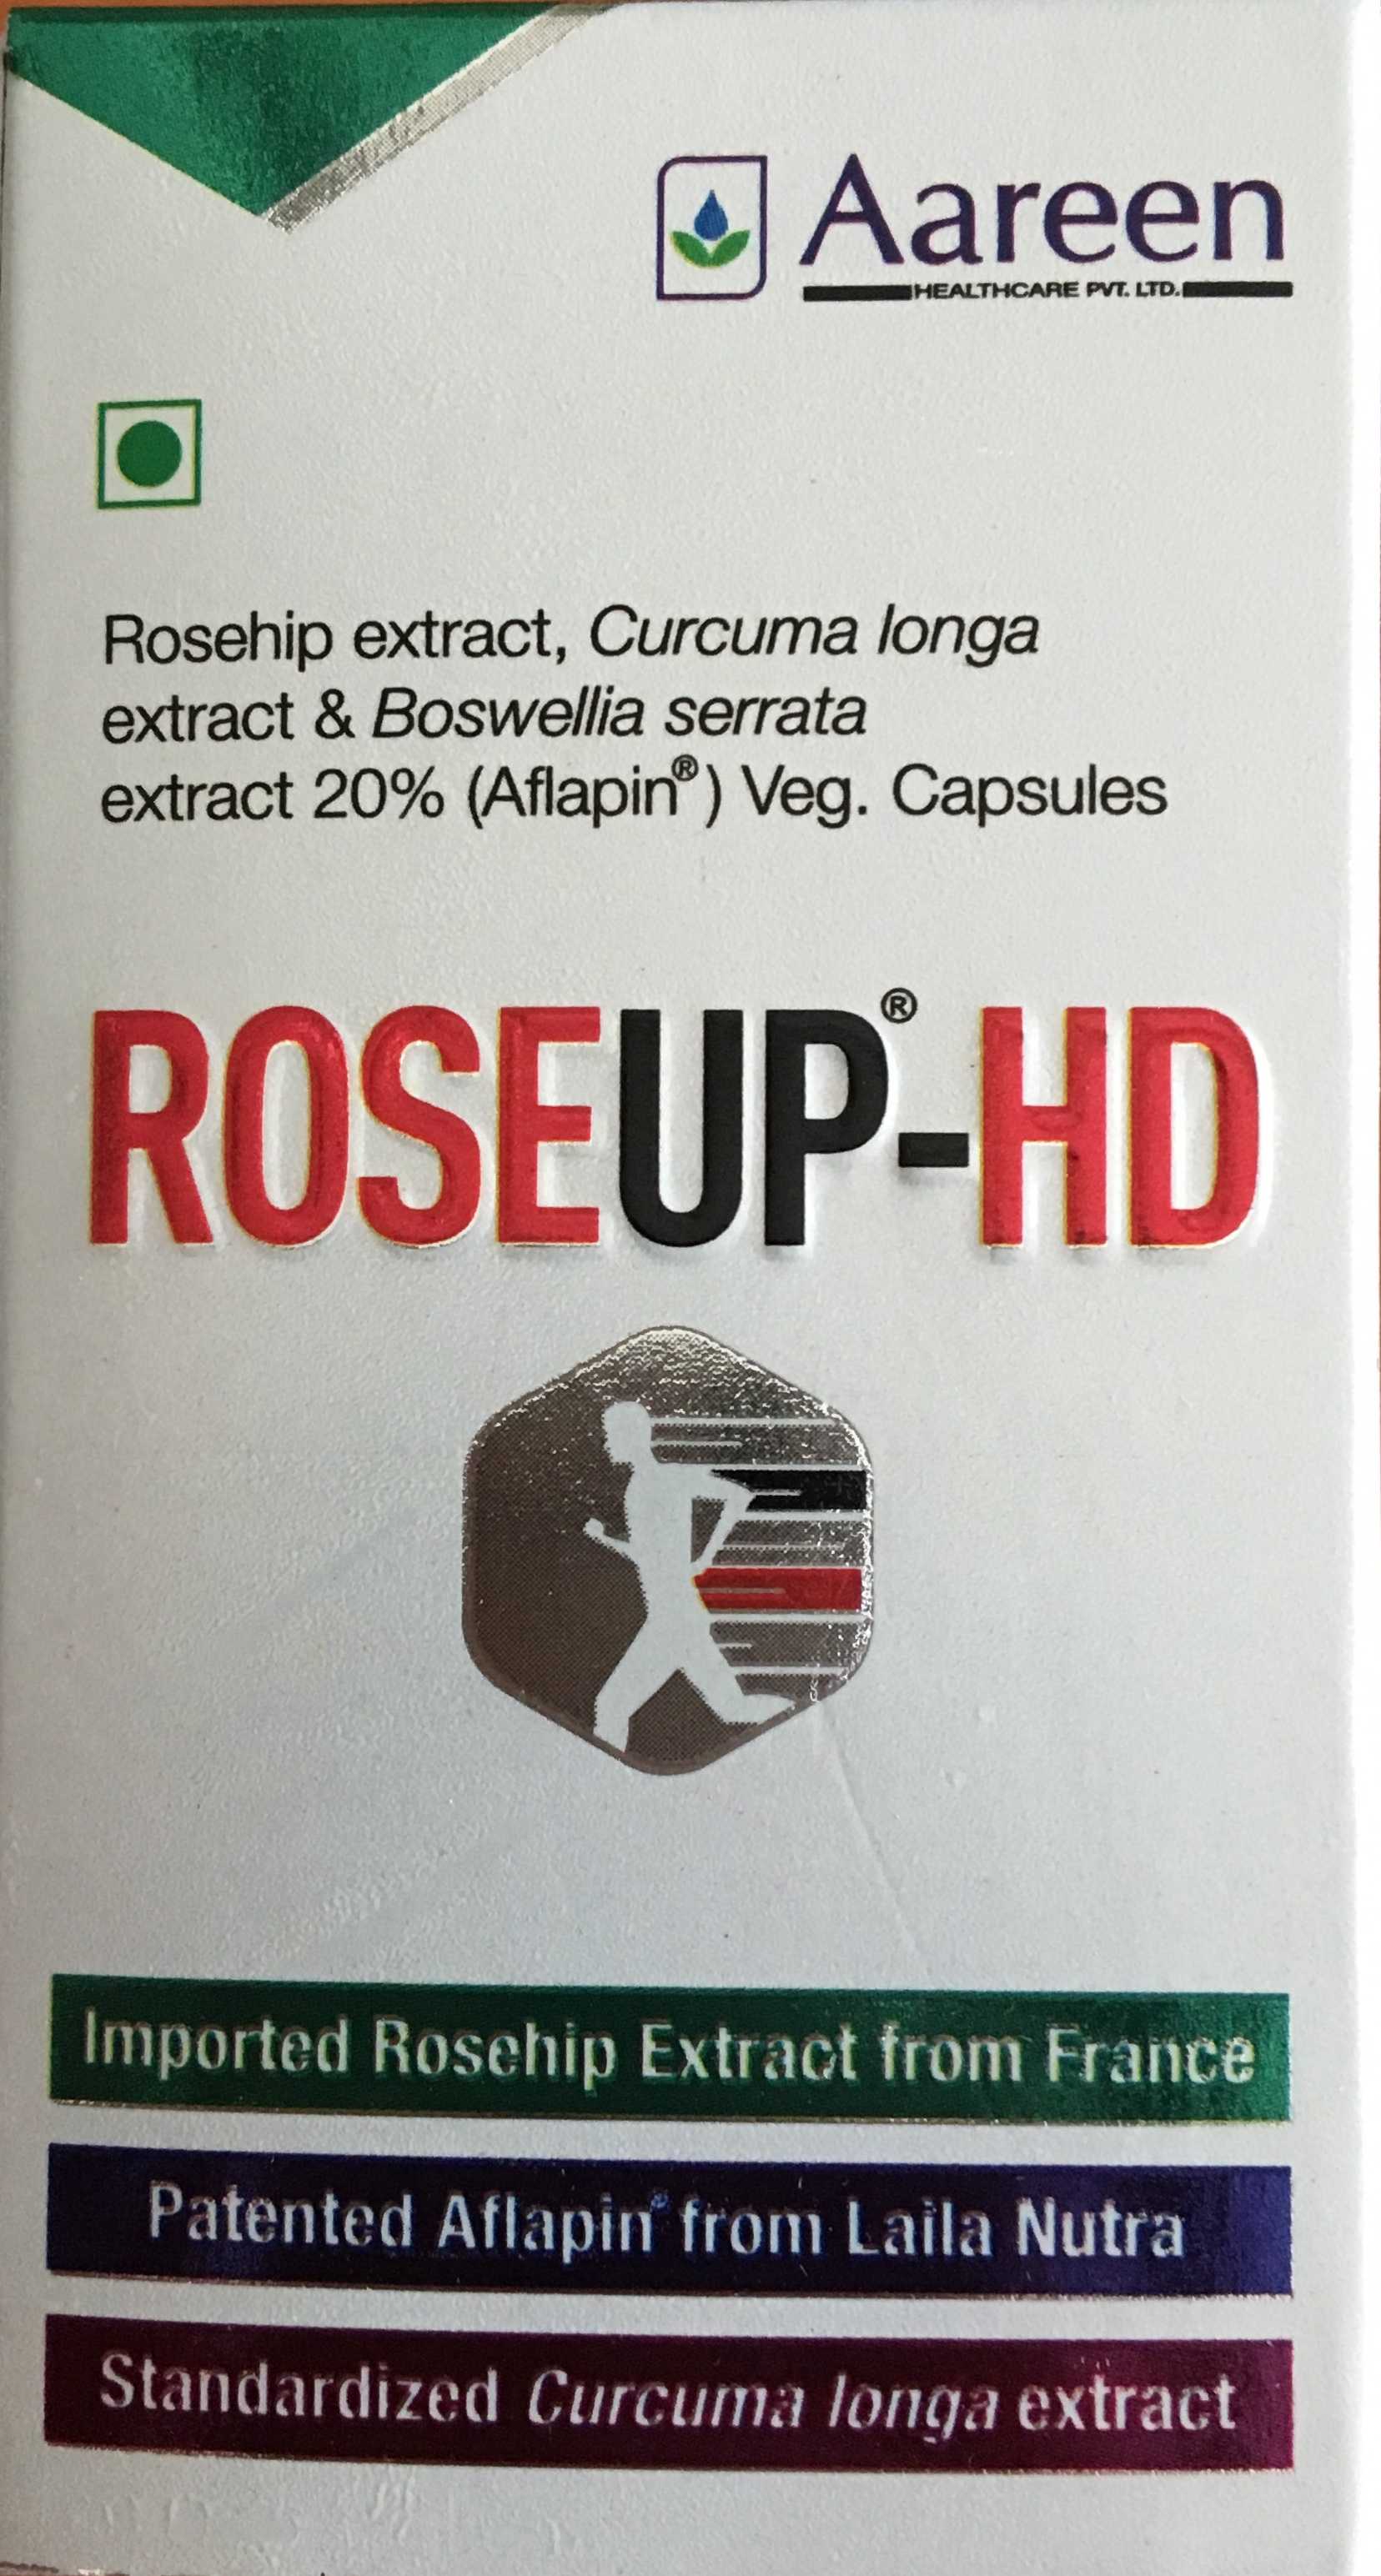 ROSEUP-HD CAPSULE